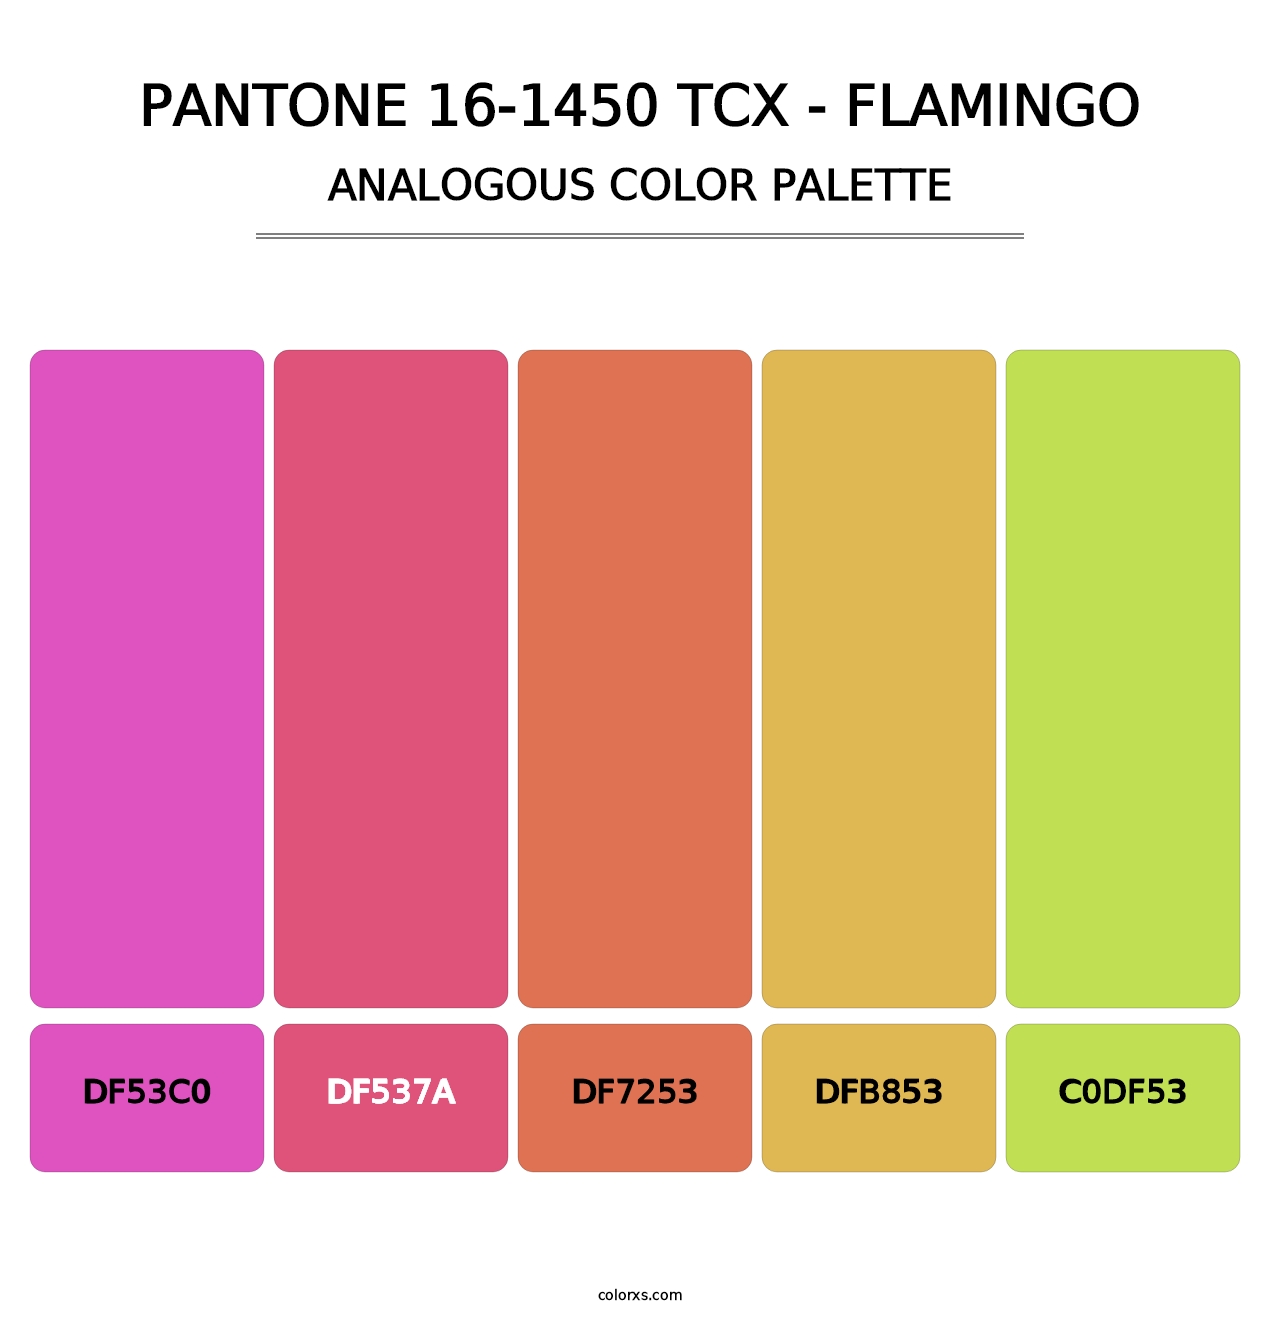 PANTONE 16-1450 TCX - Flamingo - Analogous Color Palette